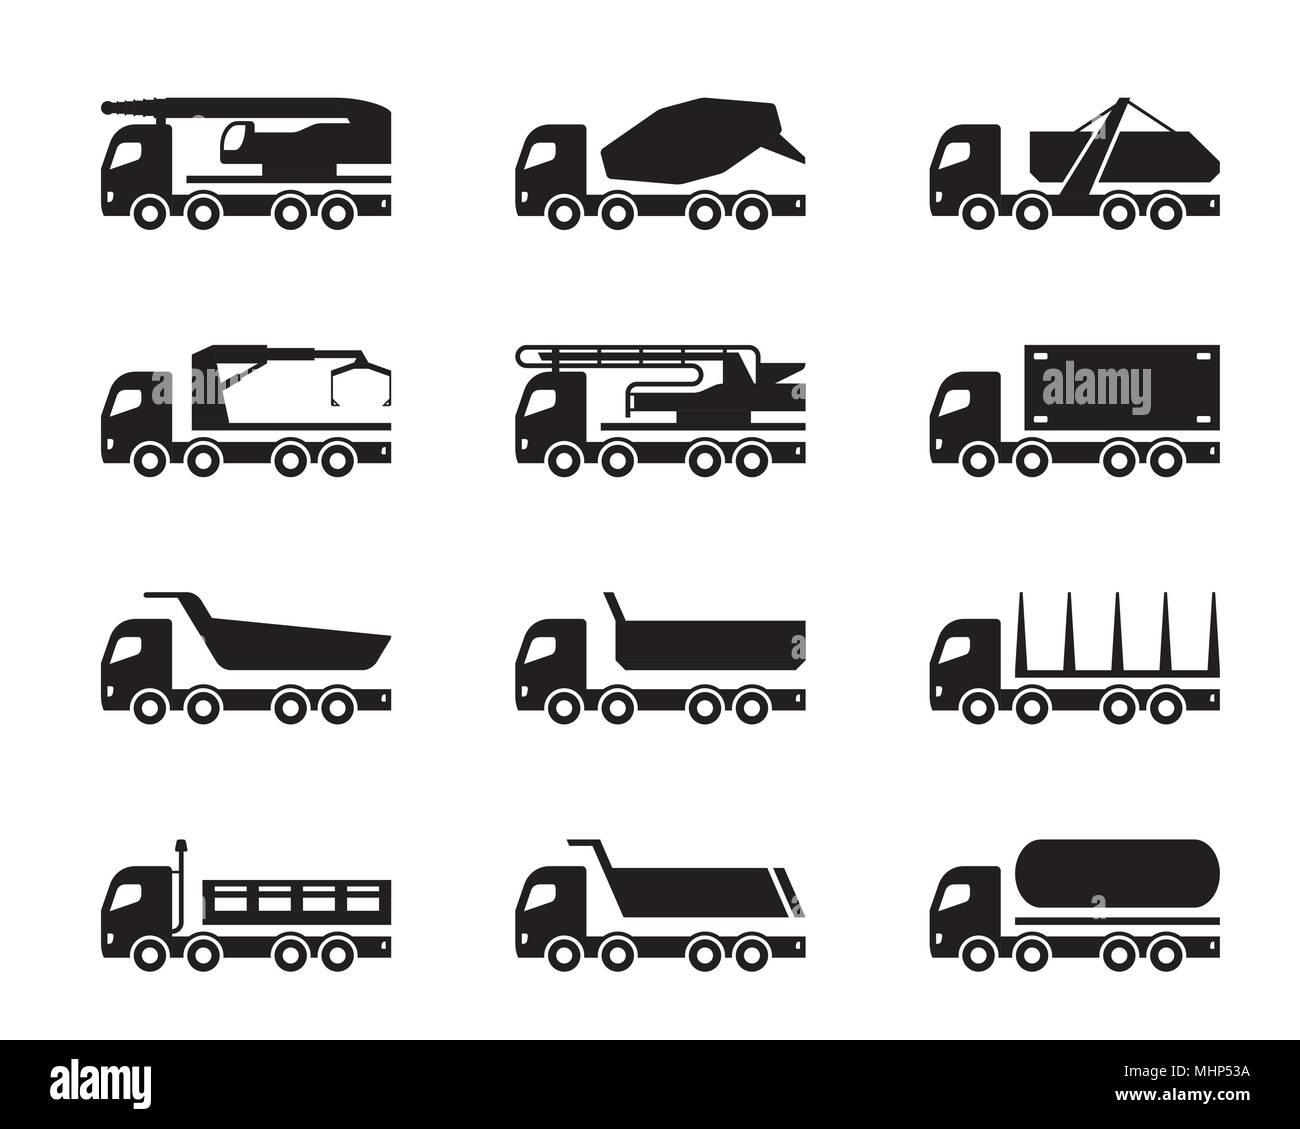 Different construction trucks - vector illustration Stock Vector